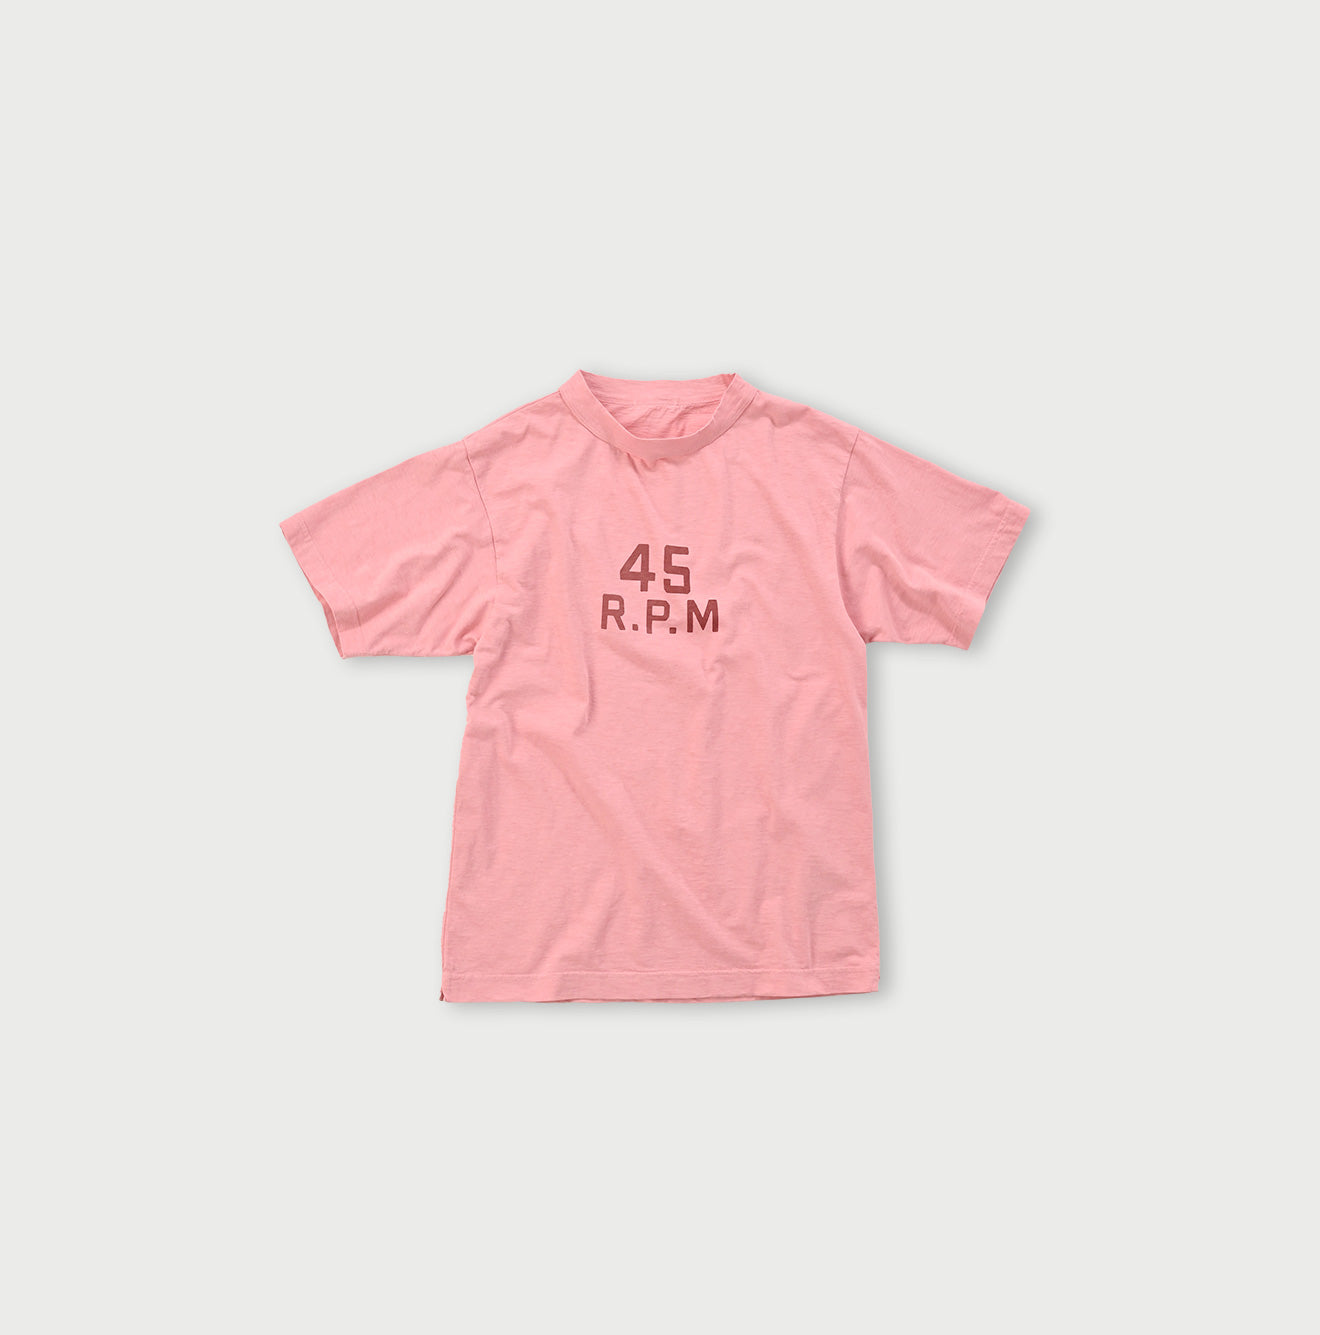 908 Mt. Fuji Logo T-shirt